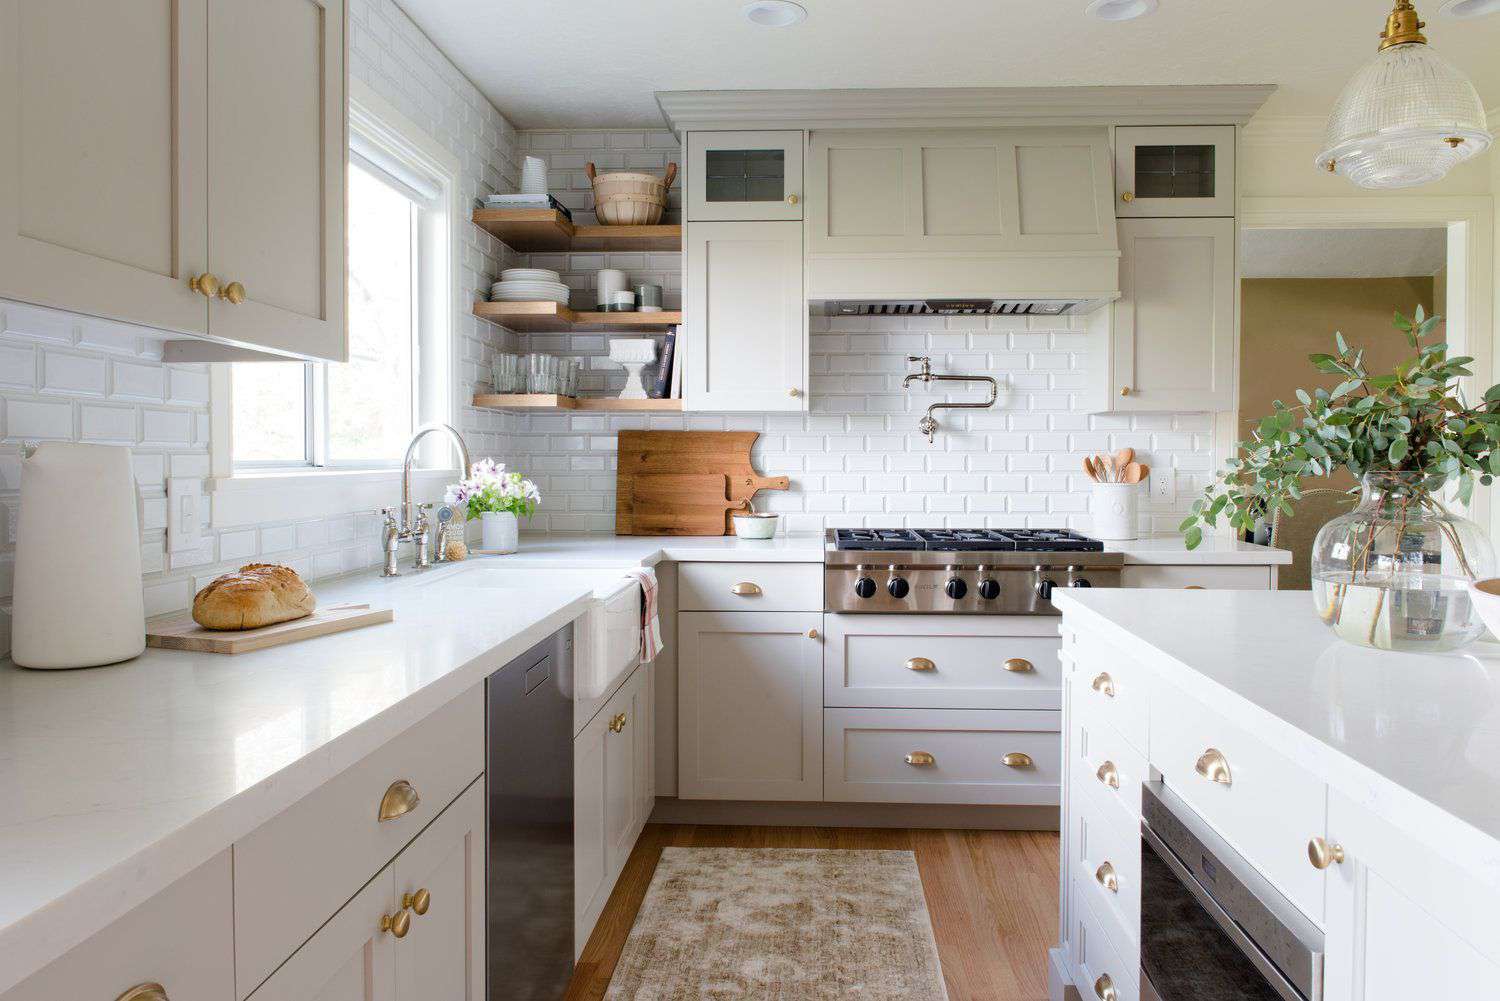 bancadas de mármore branco pálido em uma cozinha simples